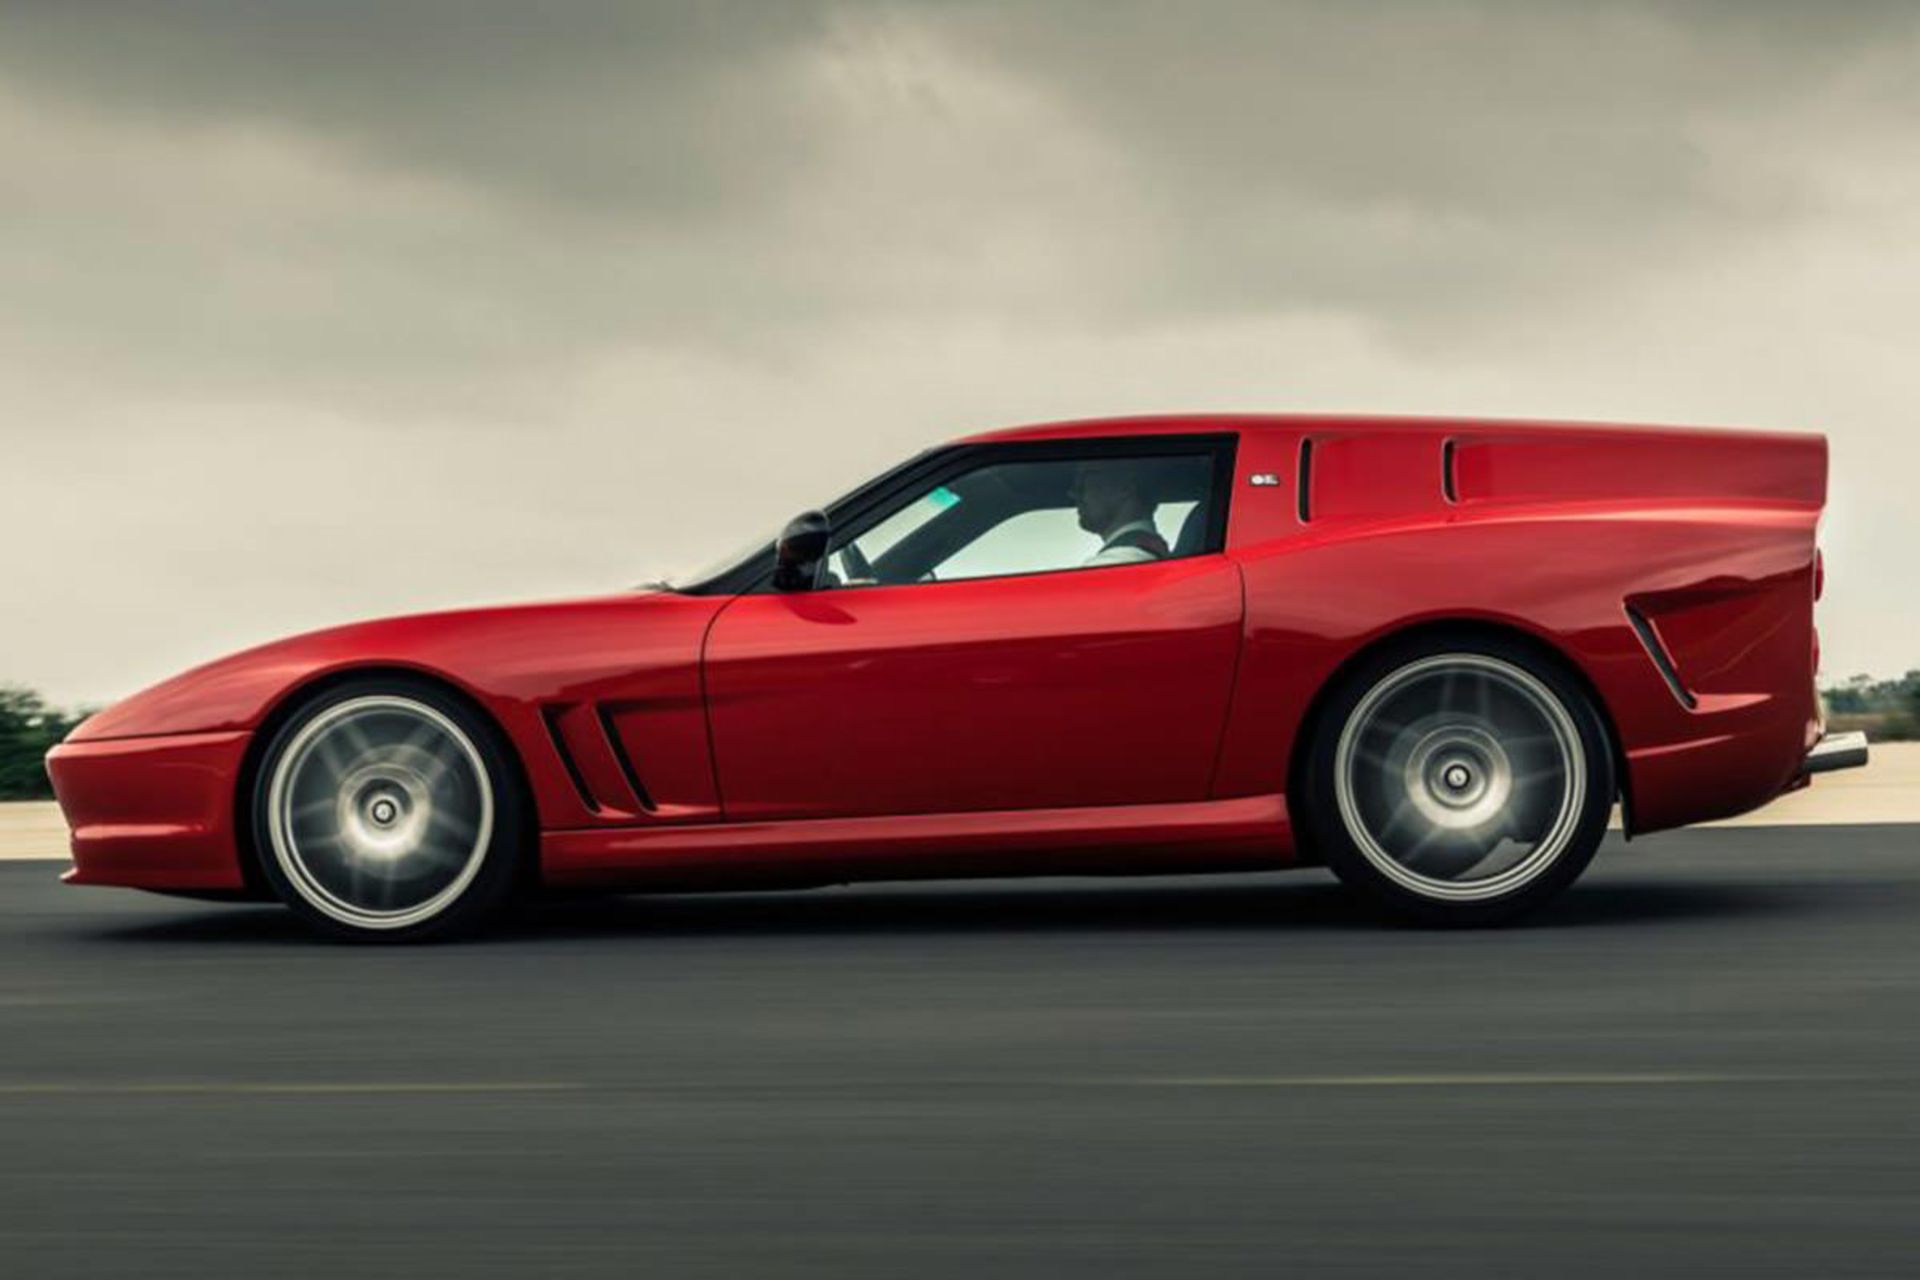 مرجع متخصصين ايران نماي جانبي فراري بردون هوميج / Ferrari Breadvan Homage قرمز رنگ در جاده